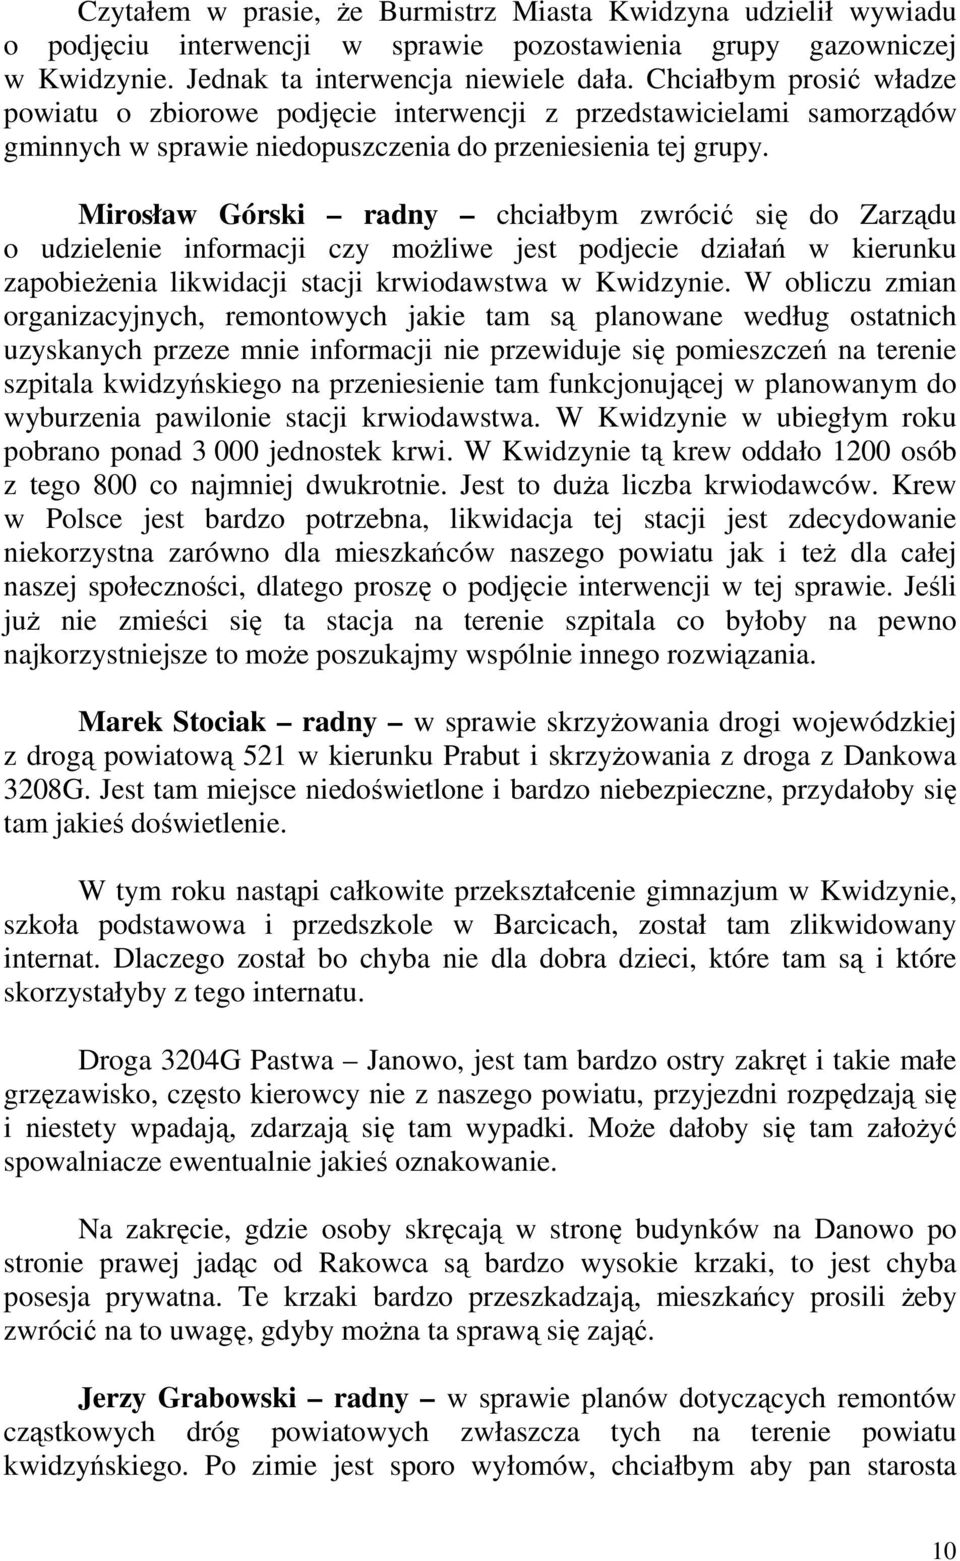 Mirosław Górski radny chciałbym zwrócić się do Zarządu o udzielenie informacji czy możliwe jest podjecie działań w kierunku zapobieżenia likwidacji stacji krwiodawstwa w Kwidzynie.